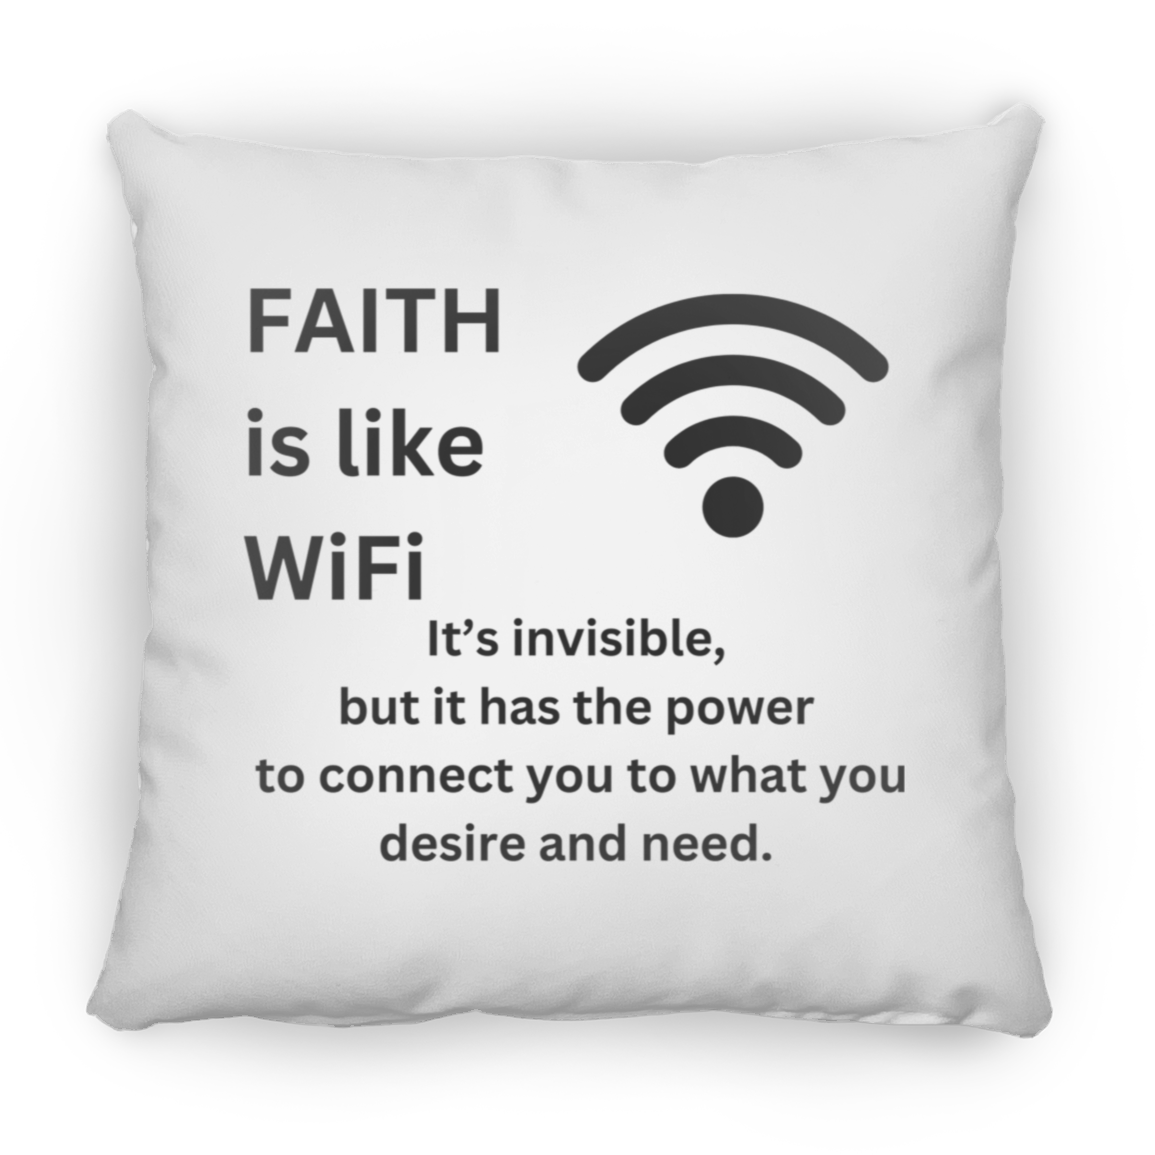 Faith is like WiFi Pillows